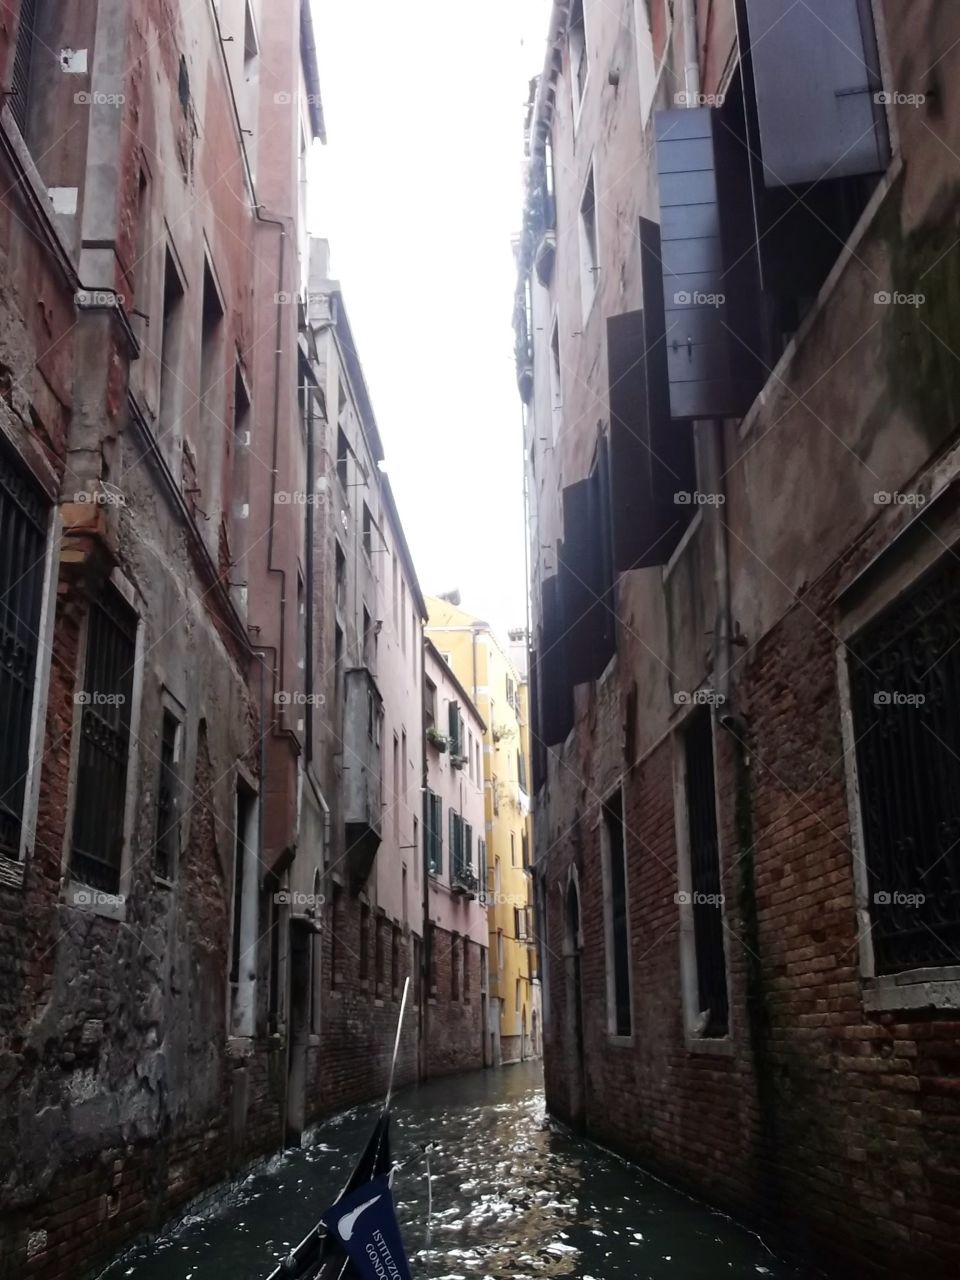 Street of Venice 